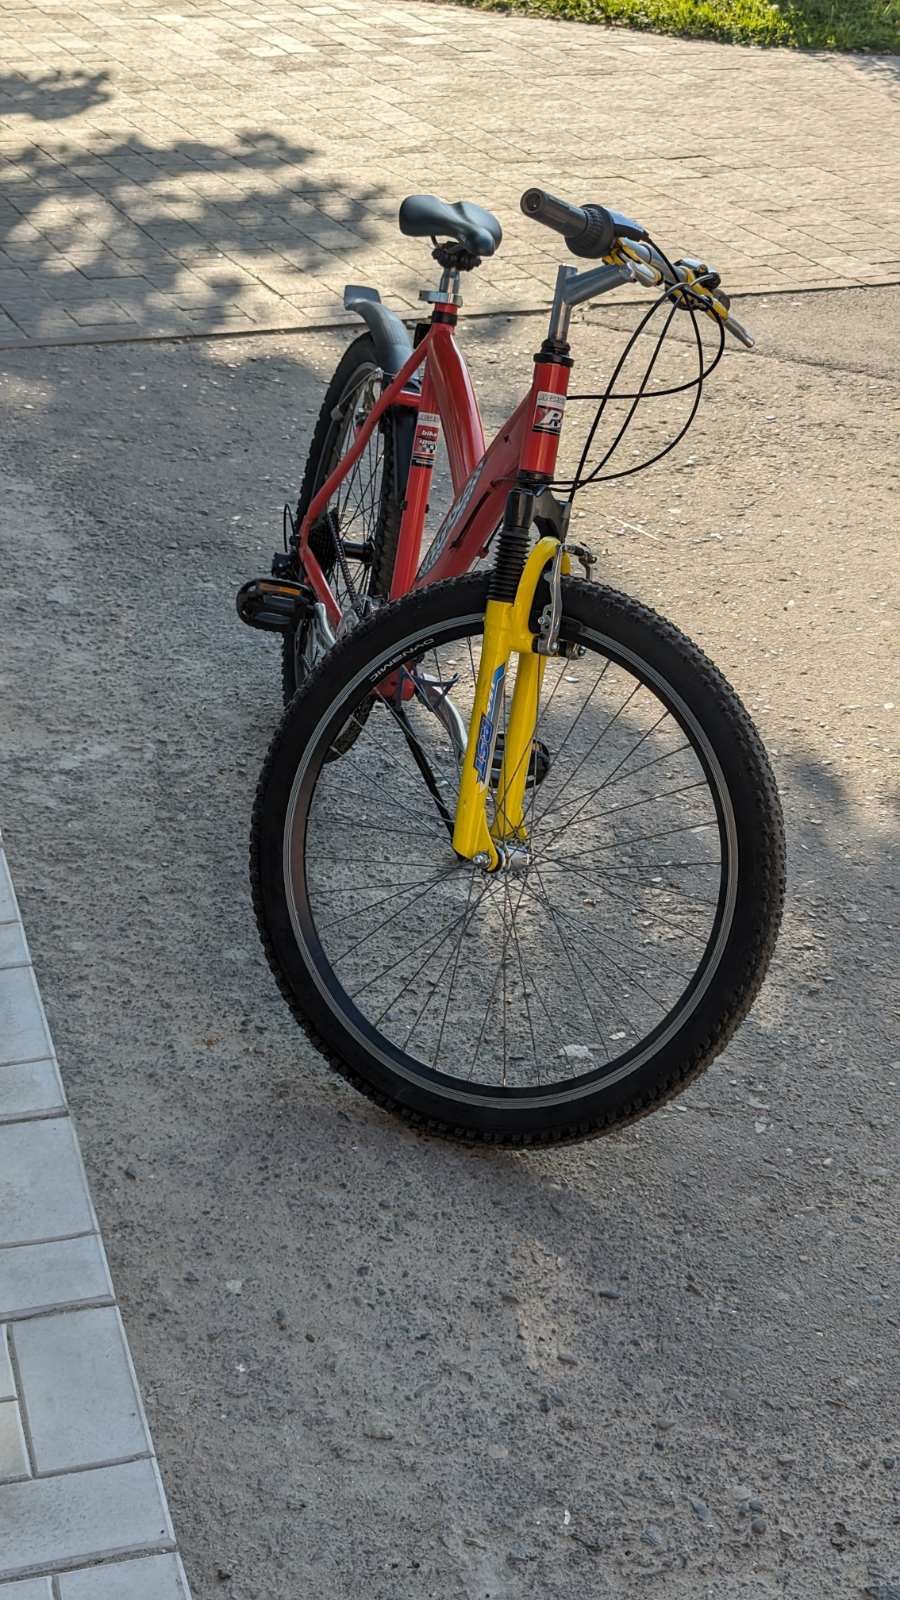 Велосипед Pegasus 3х8 червоний, майже ідеальний стан

Гірський велосип